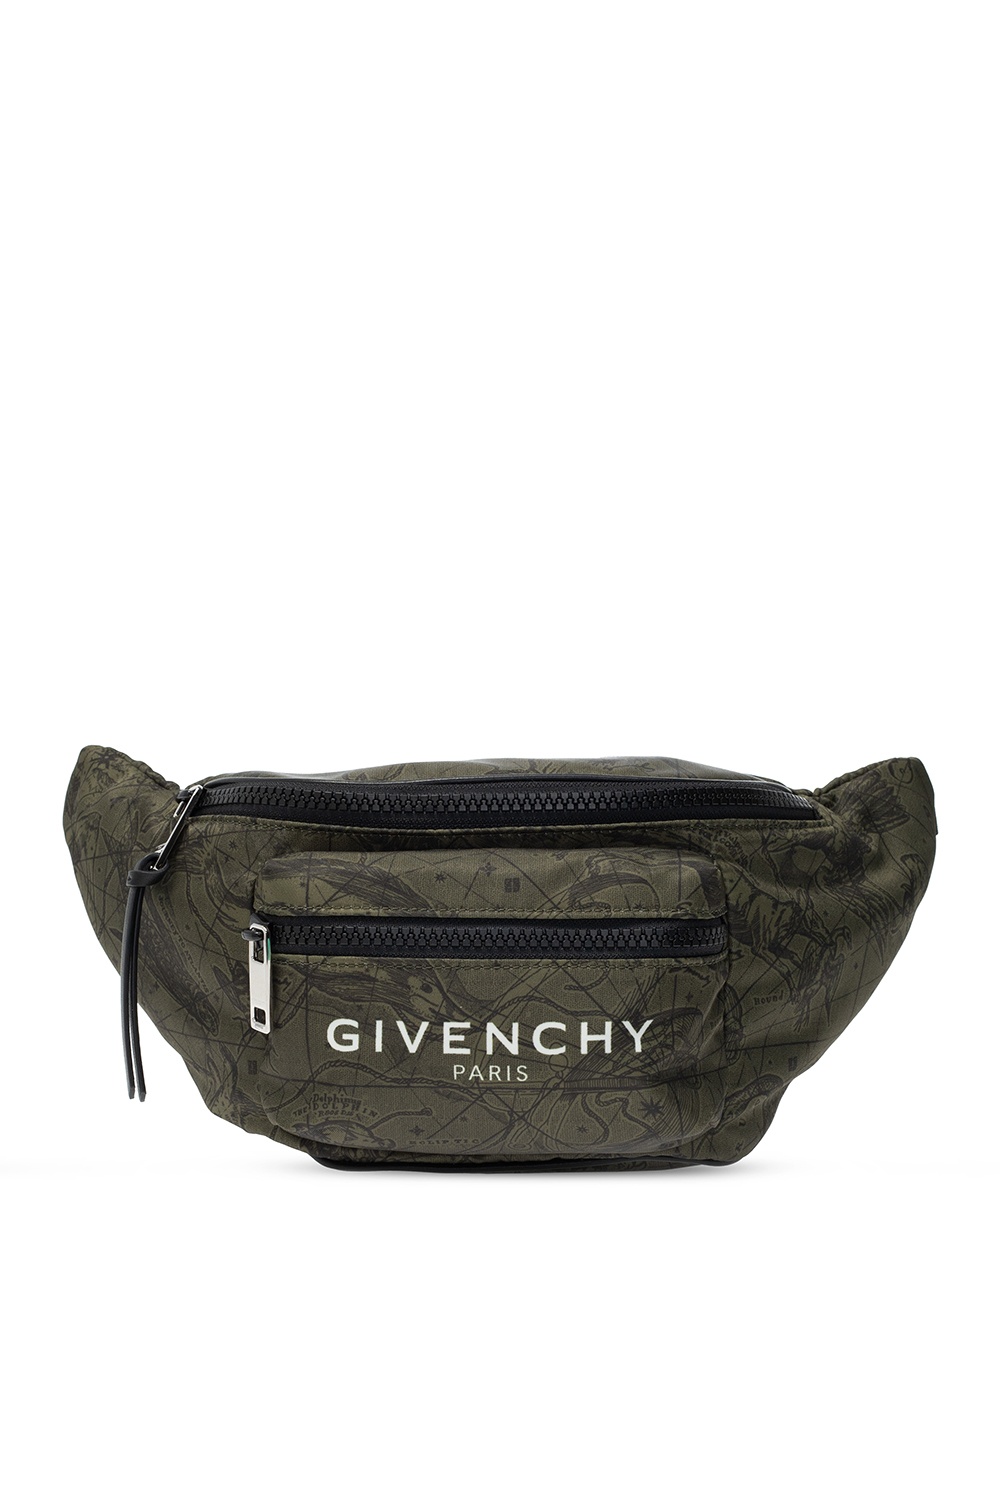 givenchy belt bag